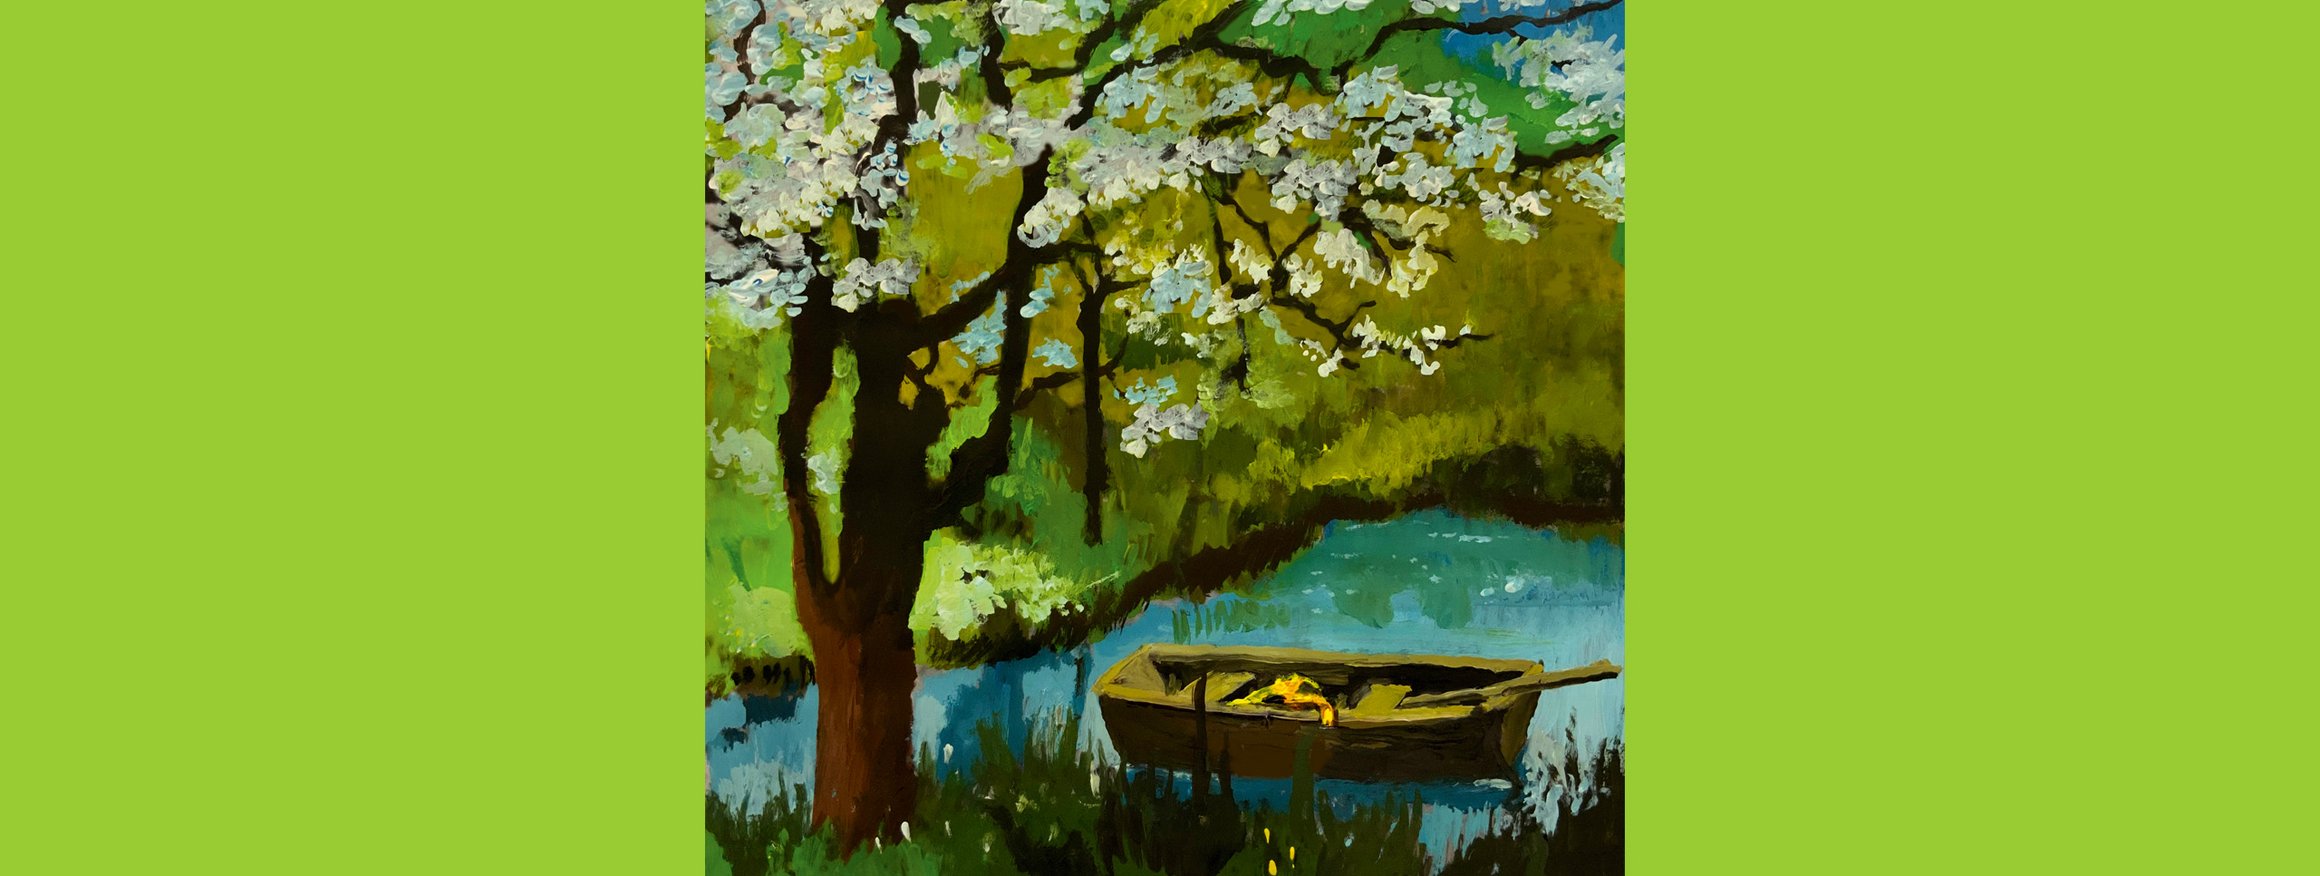 Das Gemälde von Andrea Ventura zeigt ein Boot in einem idyllischen See mit blühender Natur